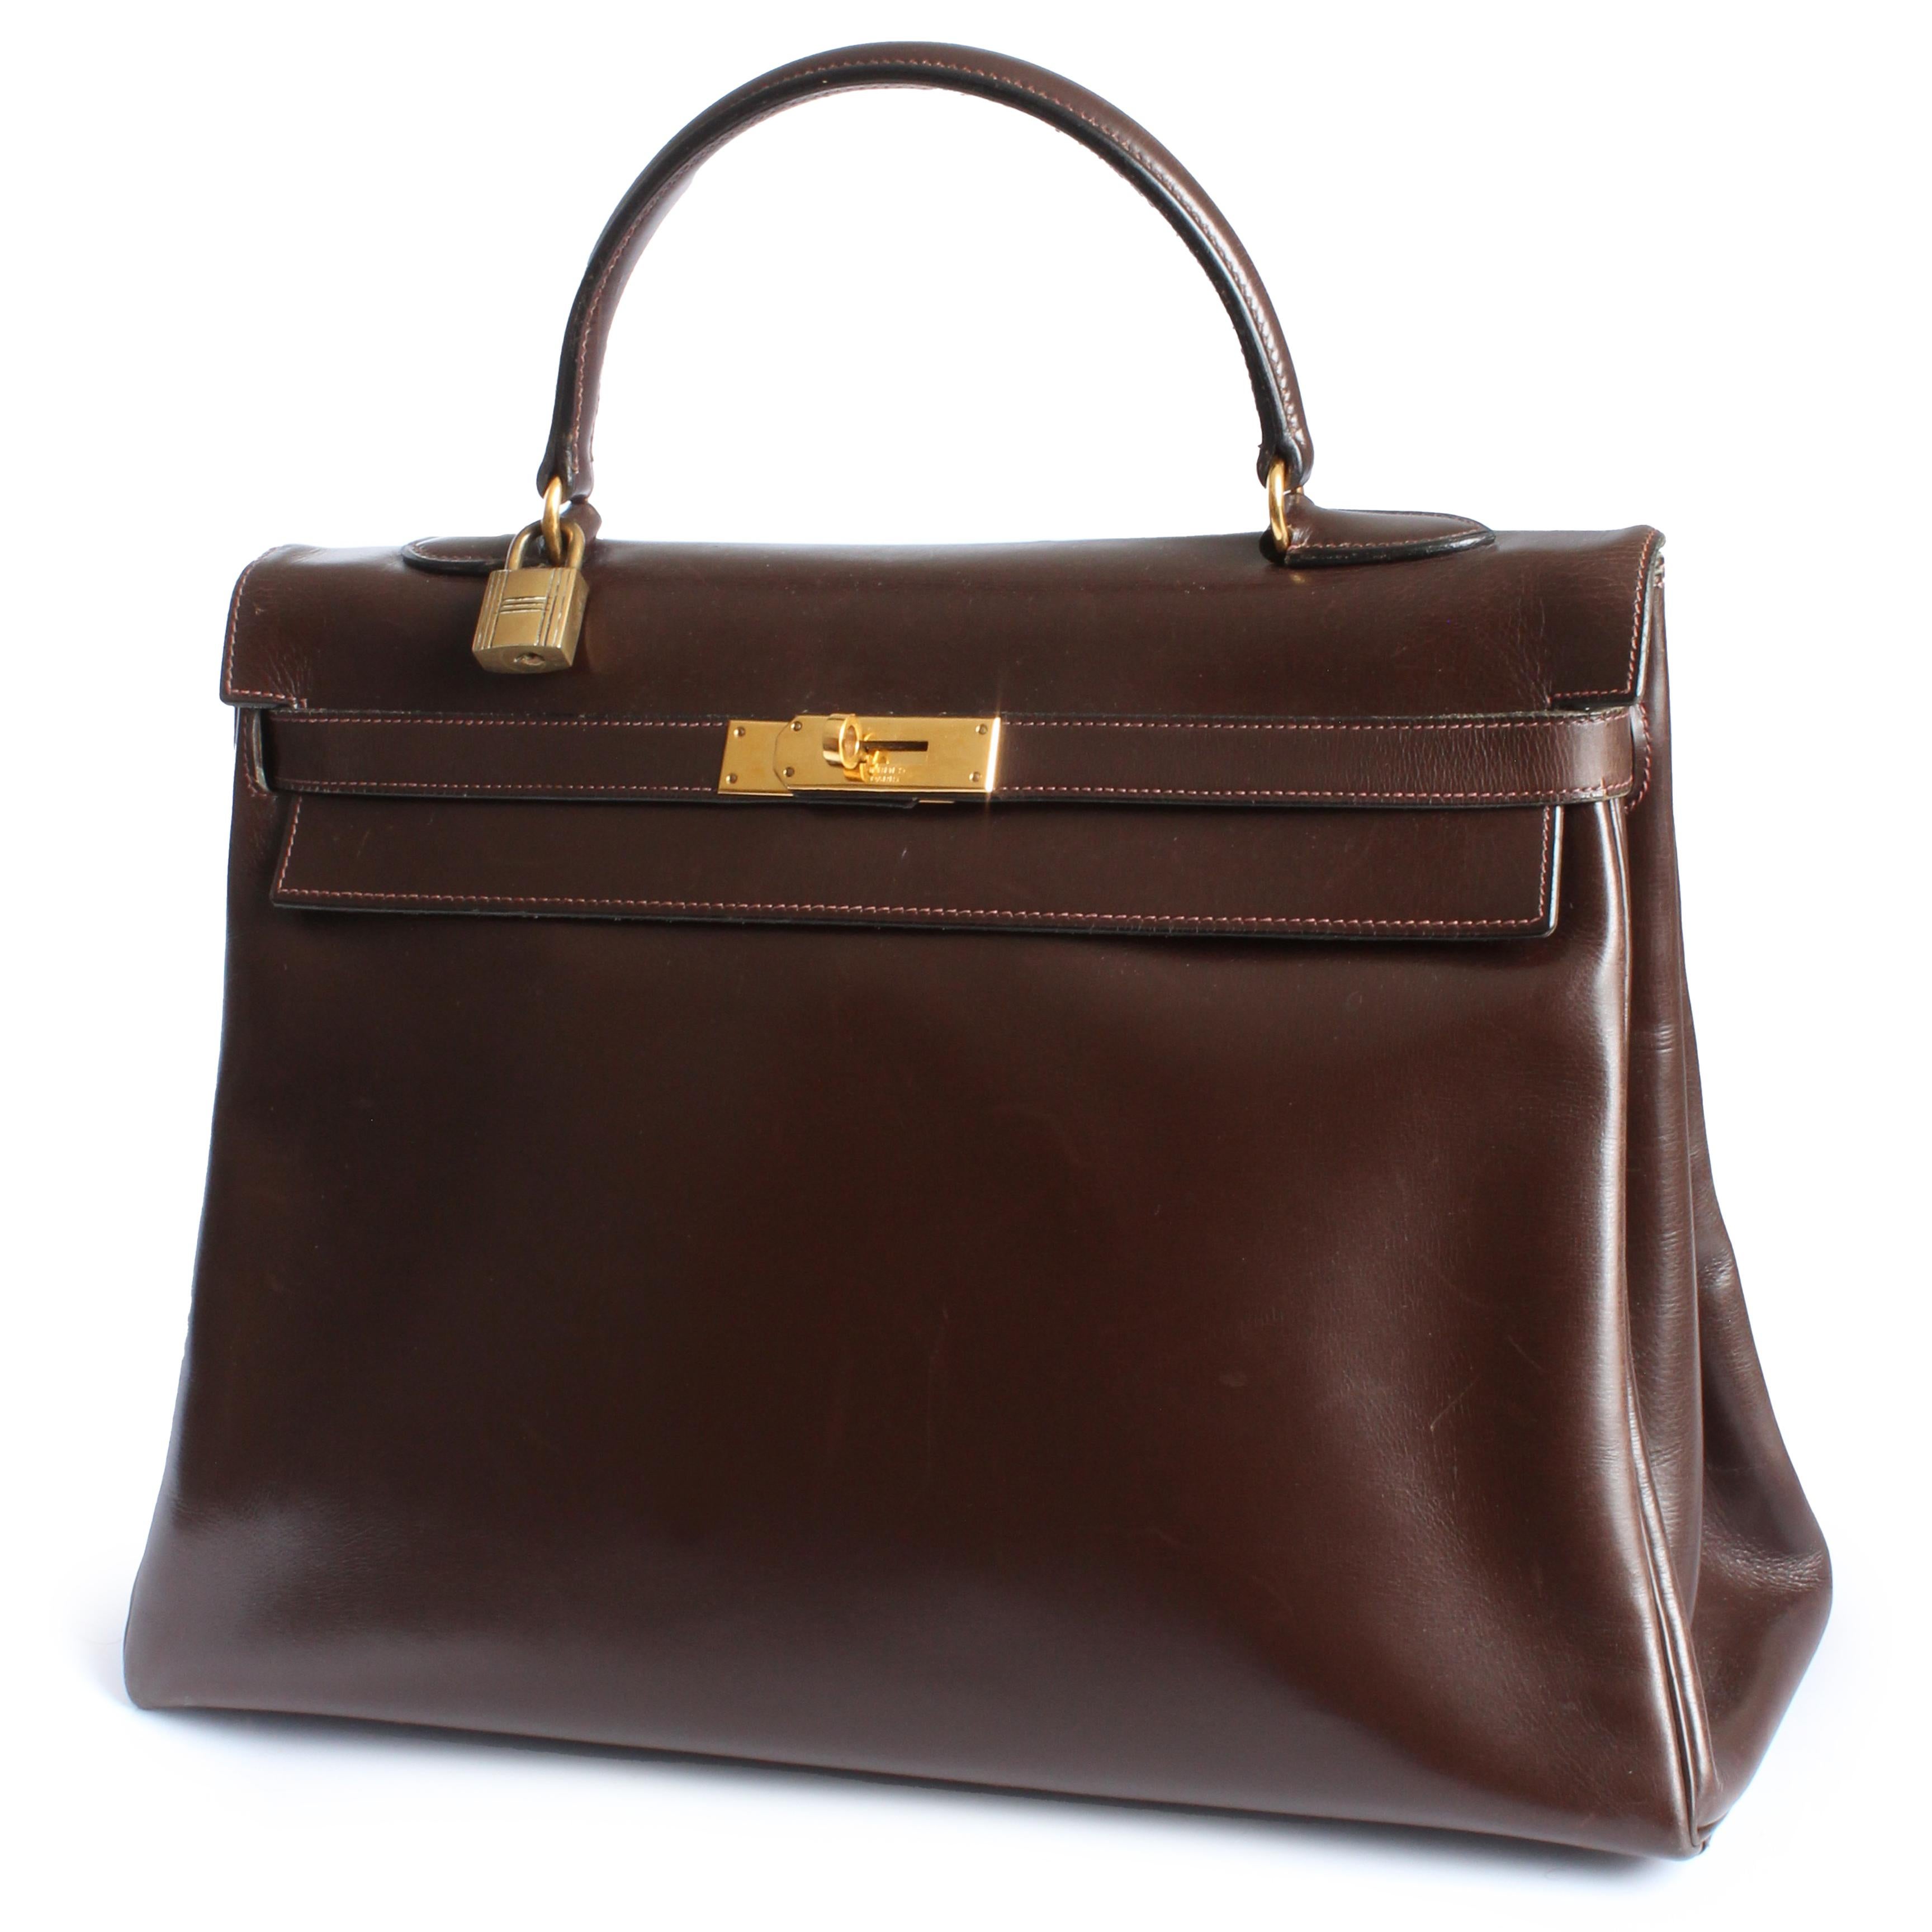 Vintage Hermes Kelly Bag Retourne Brown Box Leather 35cm Top Handle Bag 1945  For Sale 2